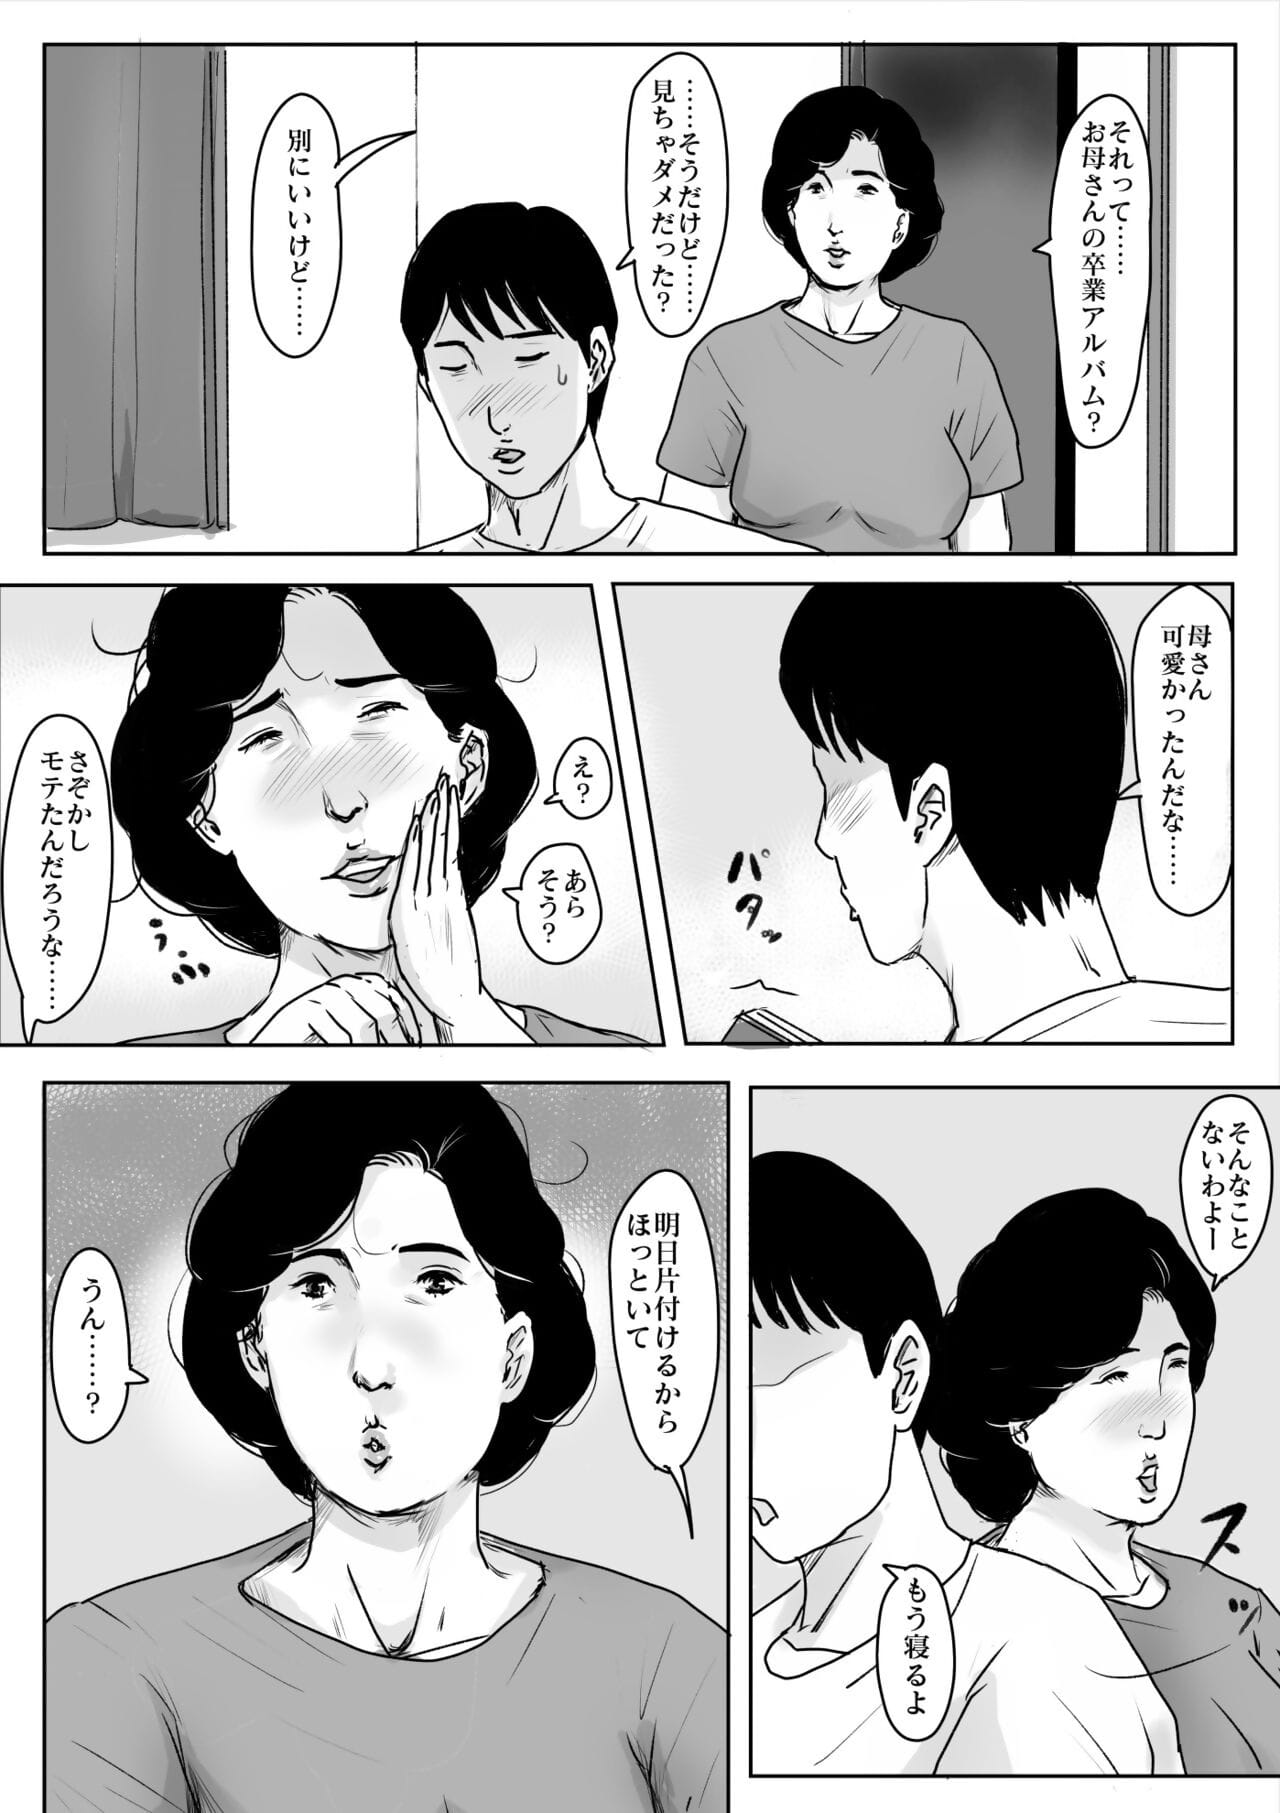 ฮ่าฮ่า ดี koishite #3 omoide ไม่ natsu page 1